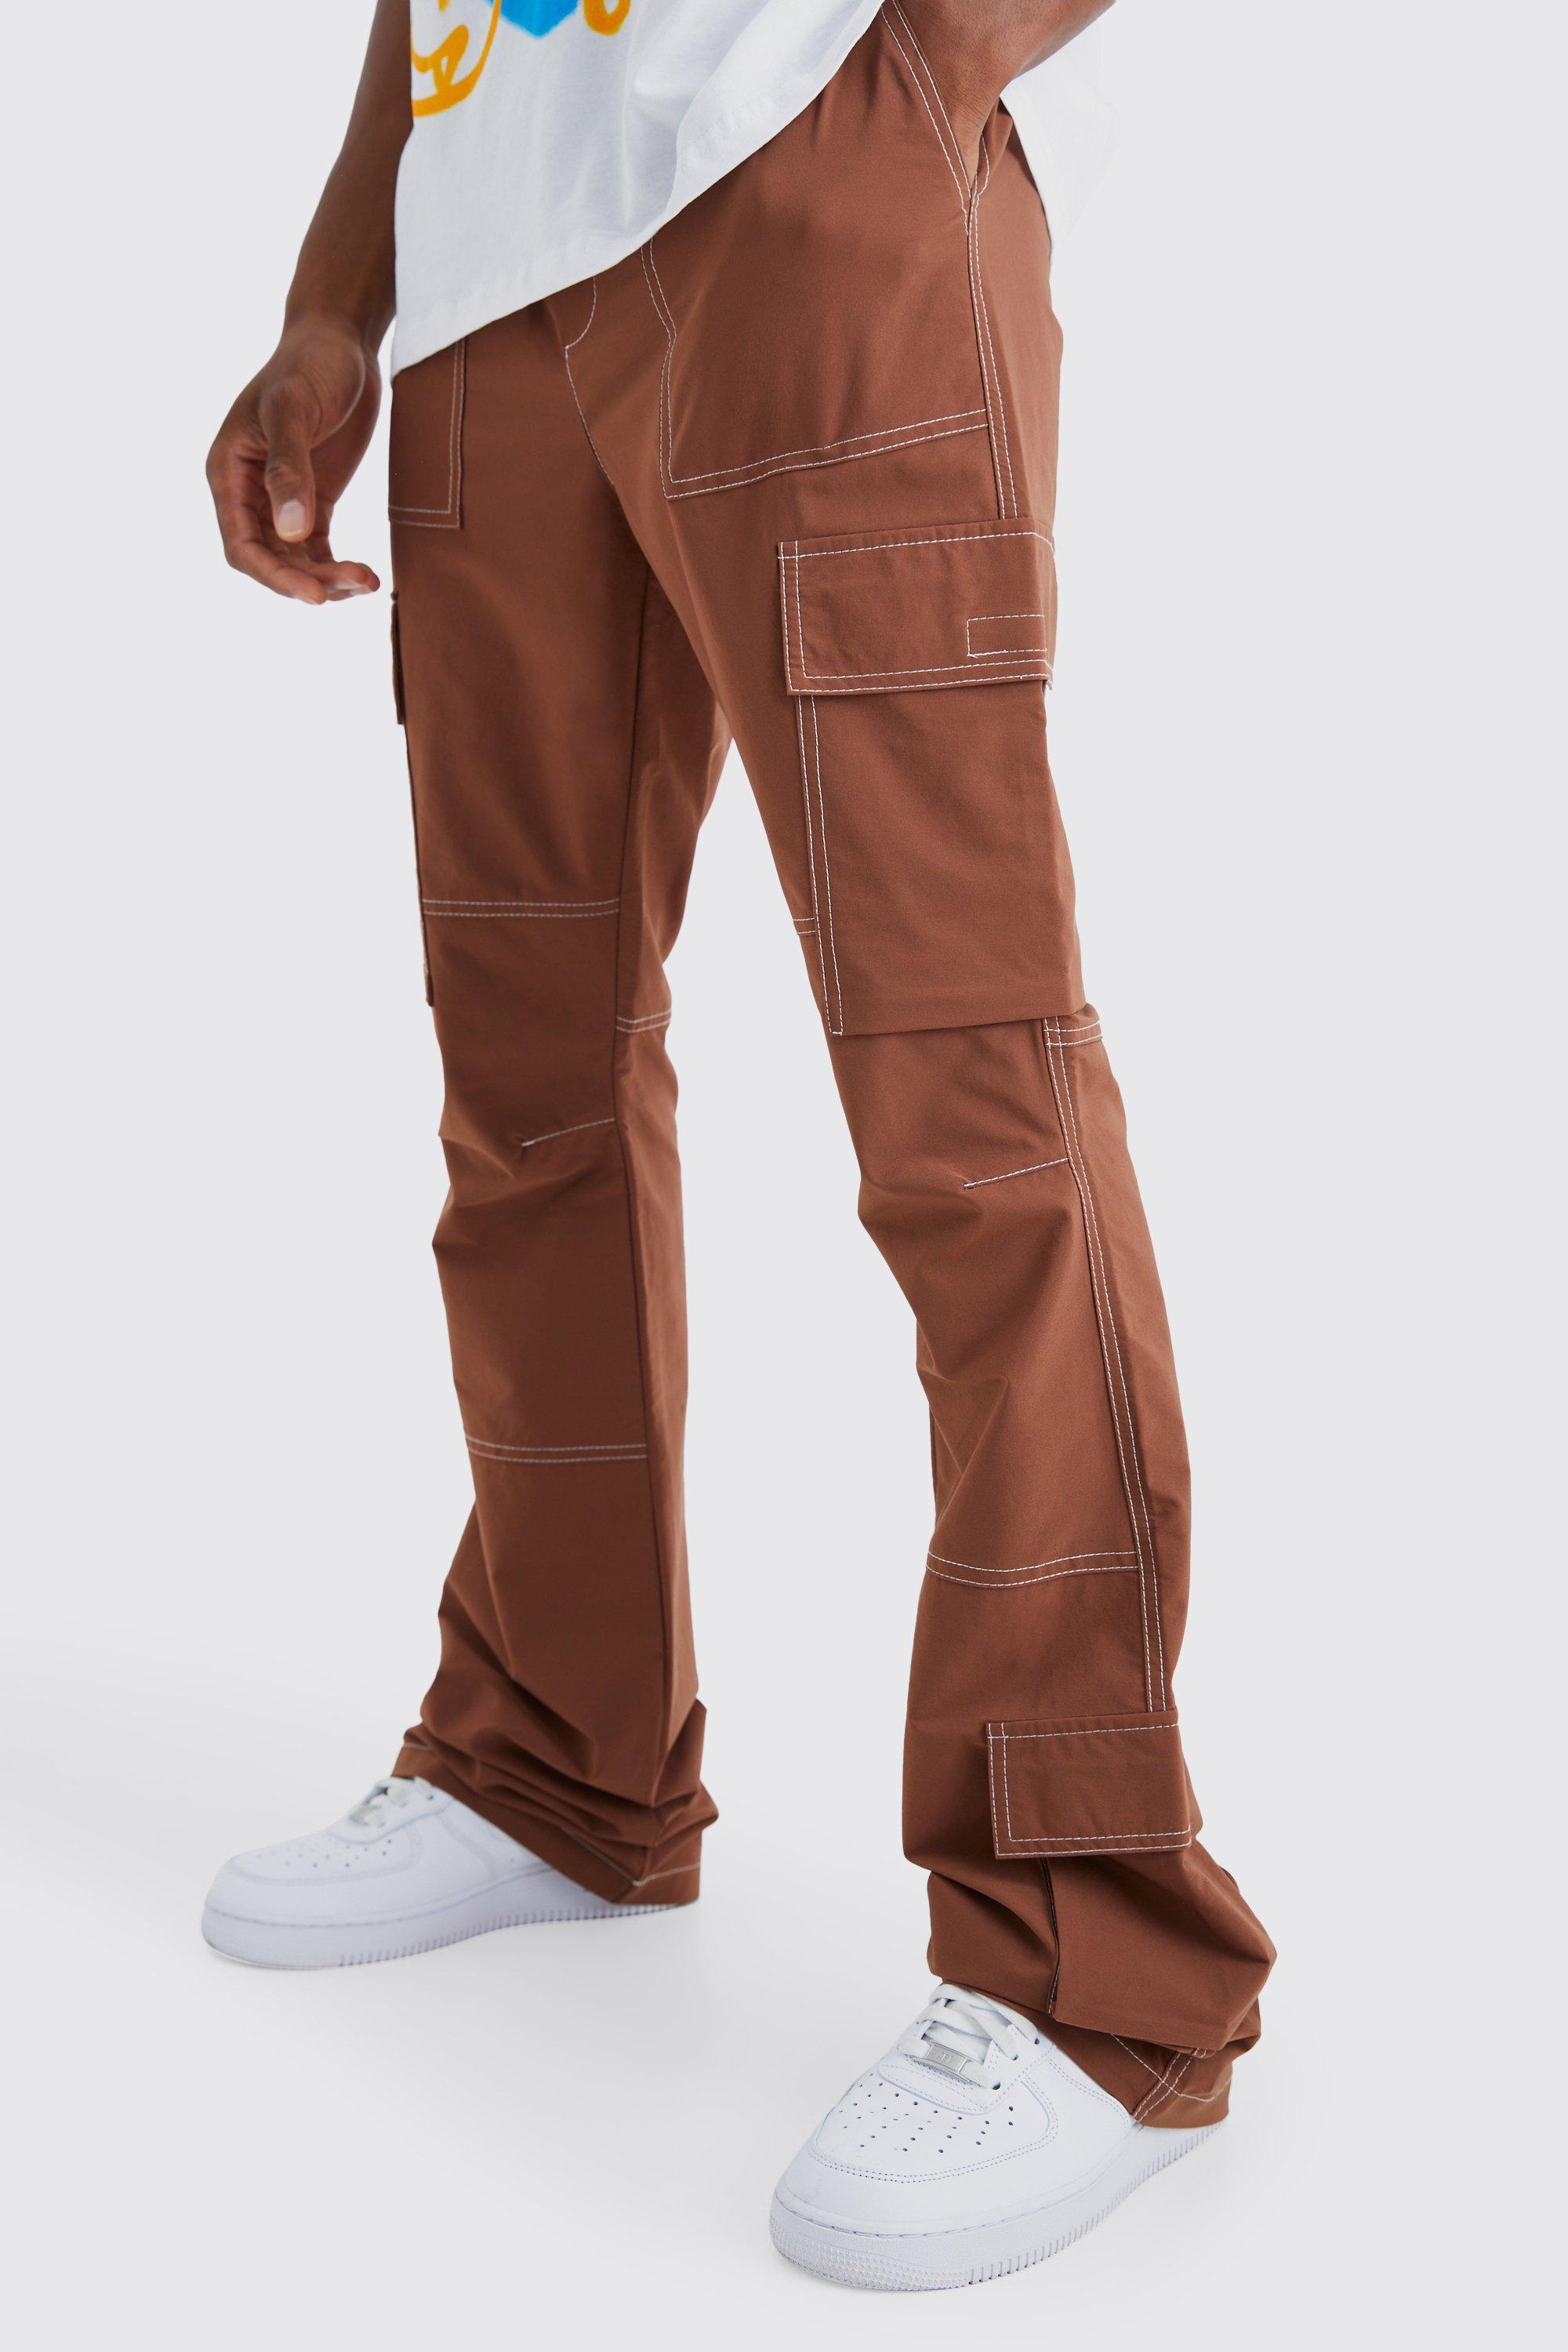 pantalon cargo flare à coutures contrastantes homme - brun - xxl, brun